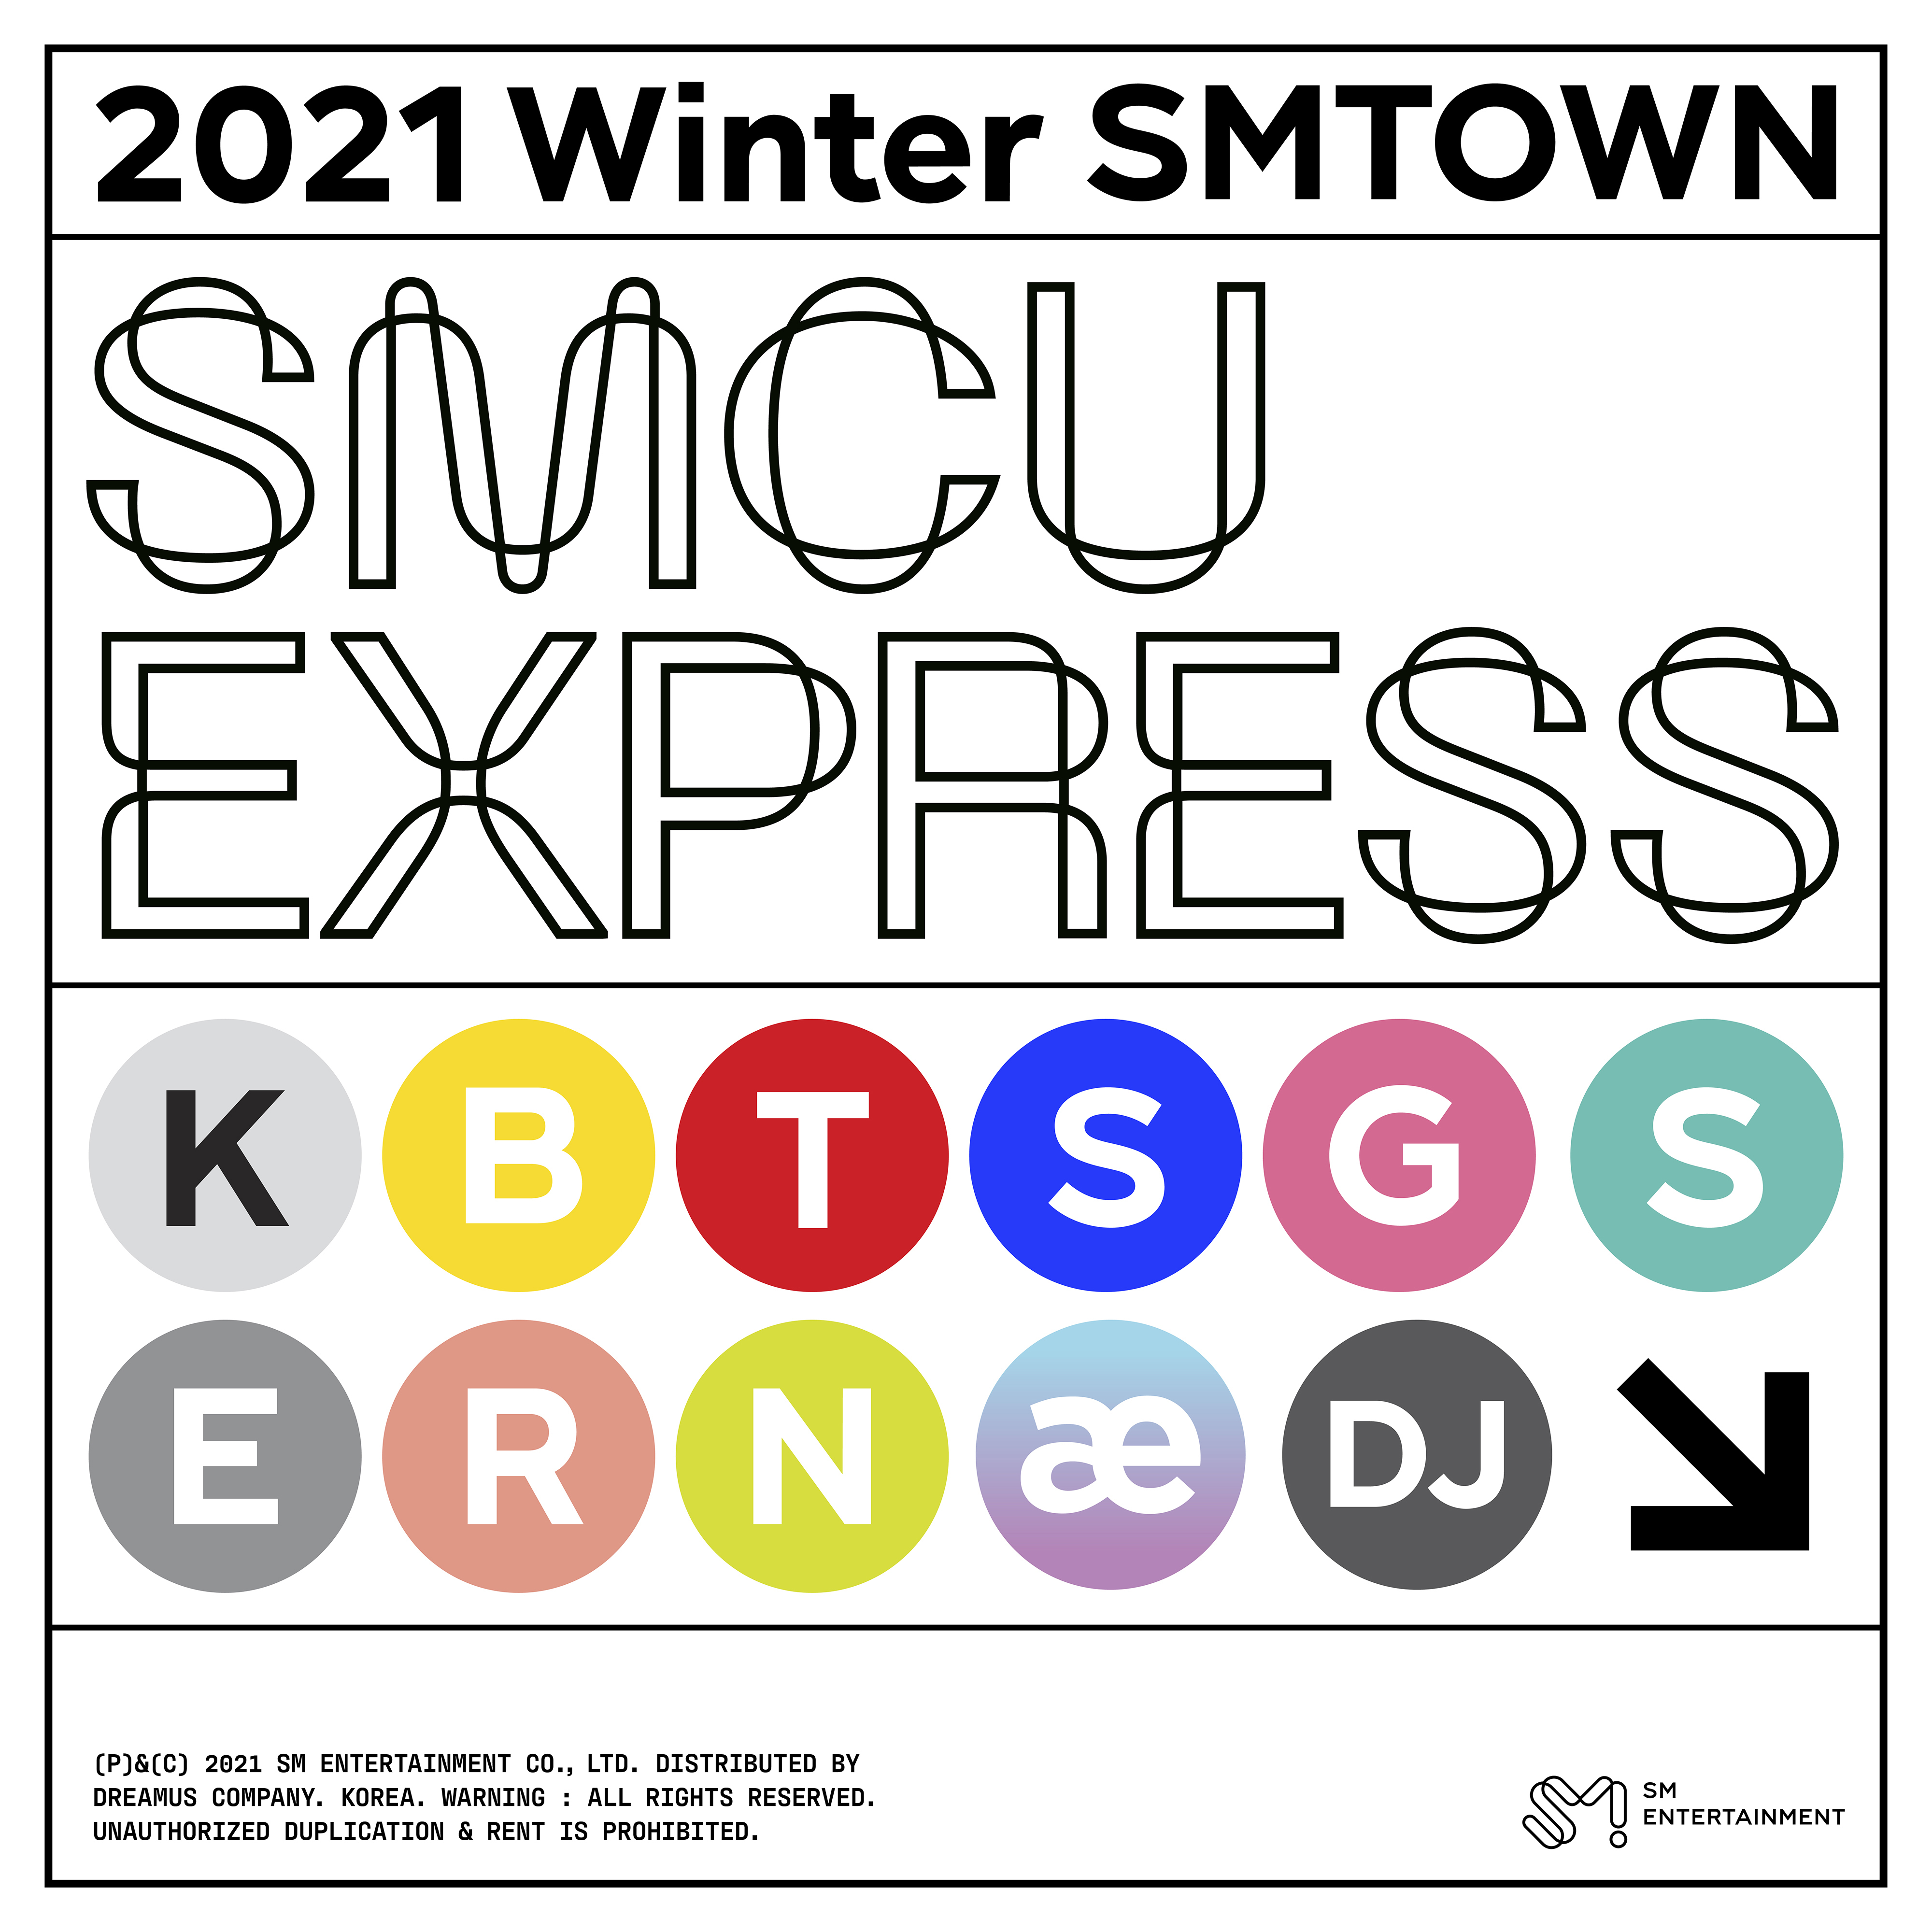 [情報] 2021 Winter SMTOWN : SMCU EXPRESS